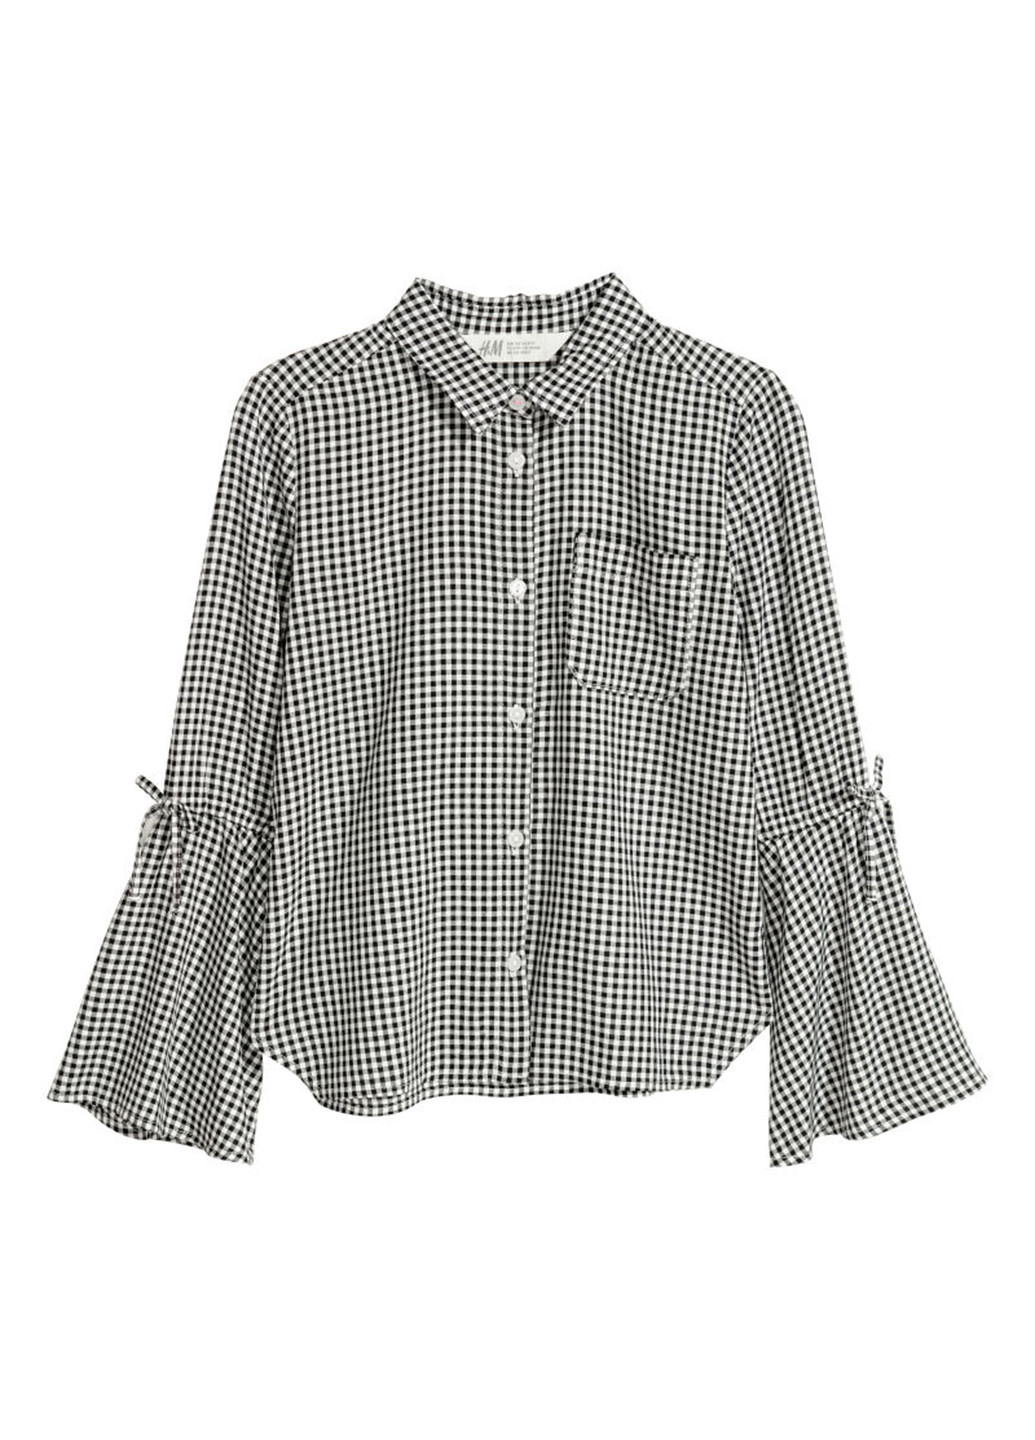 Черно-белая в клетку блузка с длинным рукавом H&M демисезонная